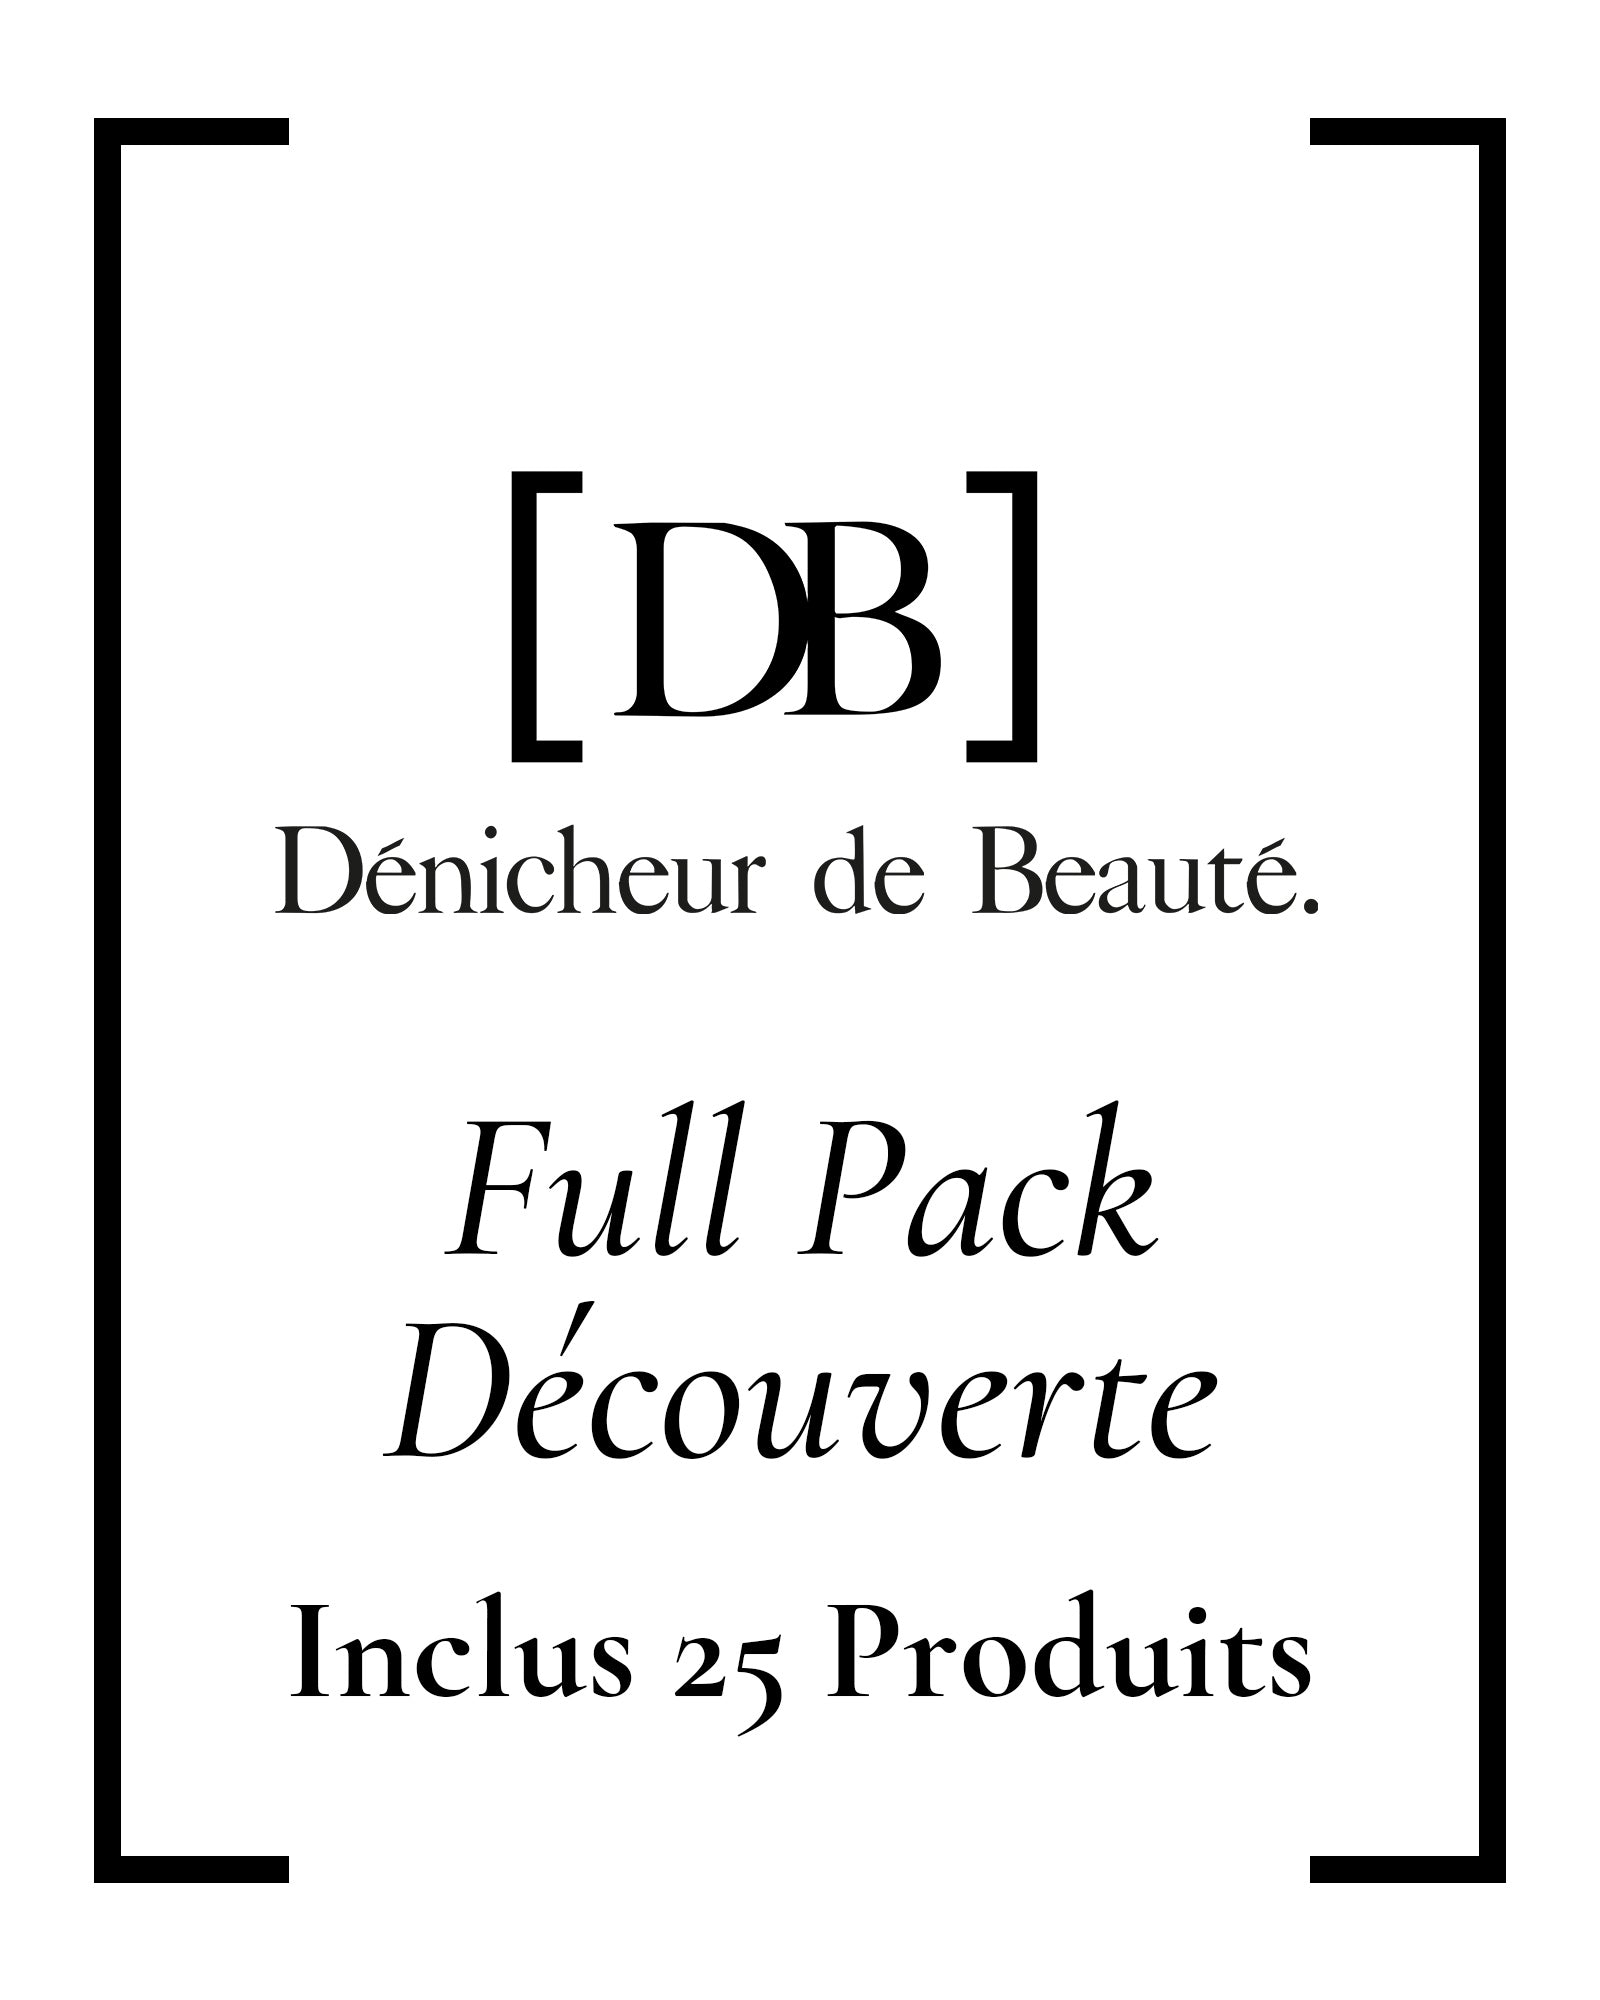 Full Pack Découverte Dénicheur de Beauté